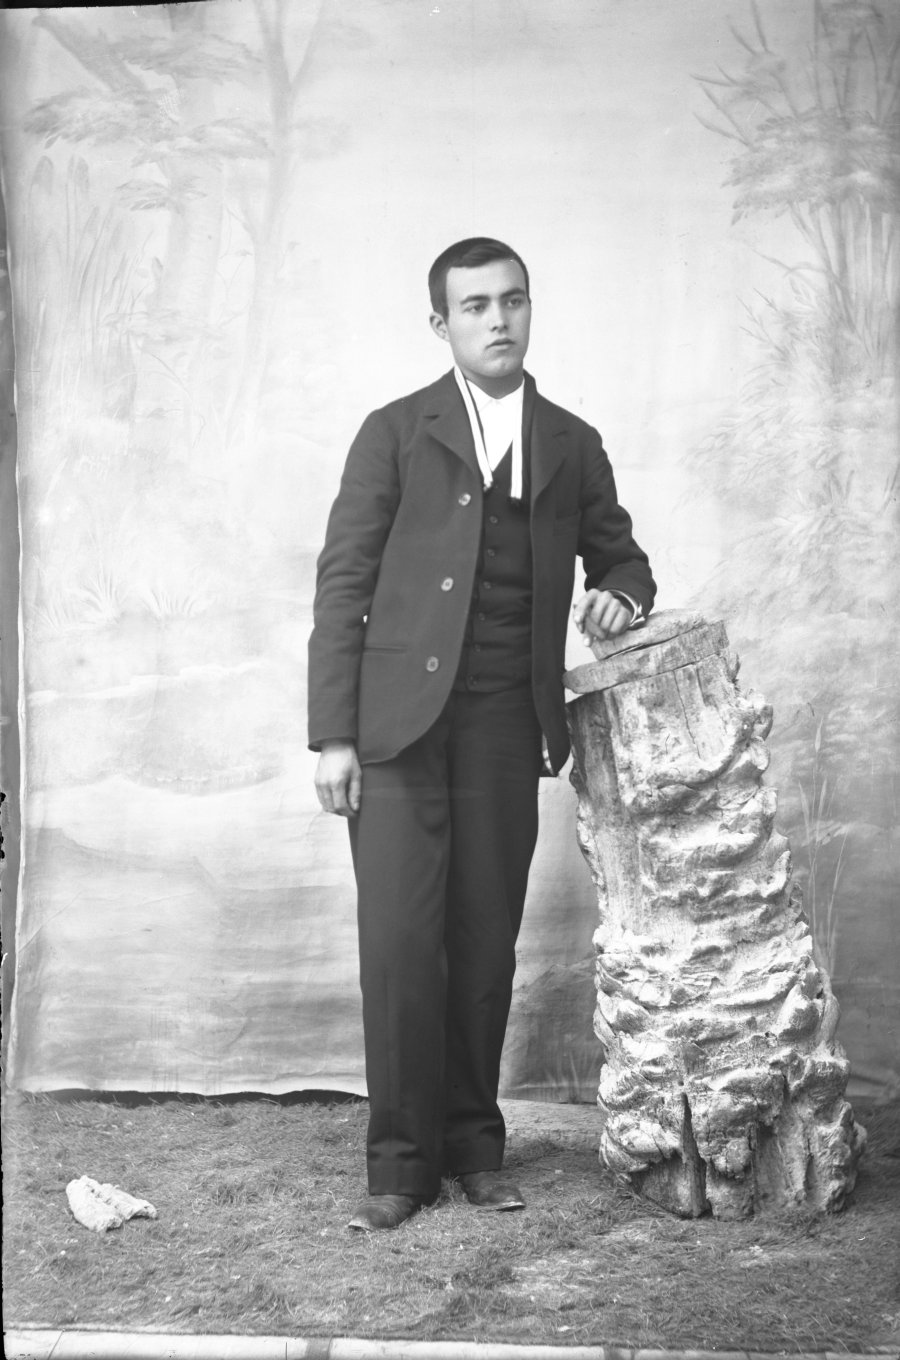 Retrato de estudio de un hombre joven con traje de tres piezas